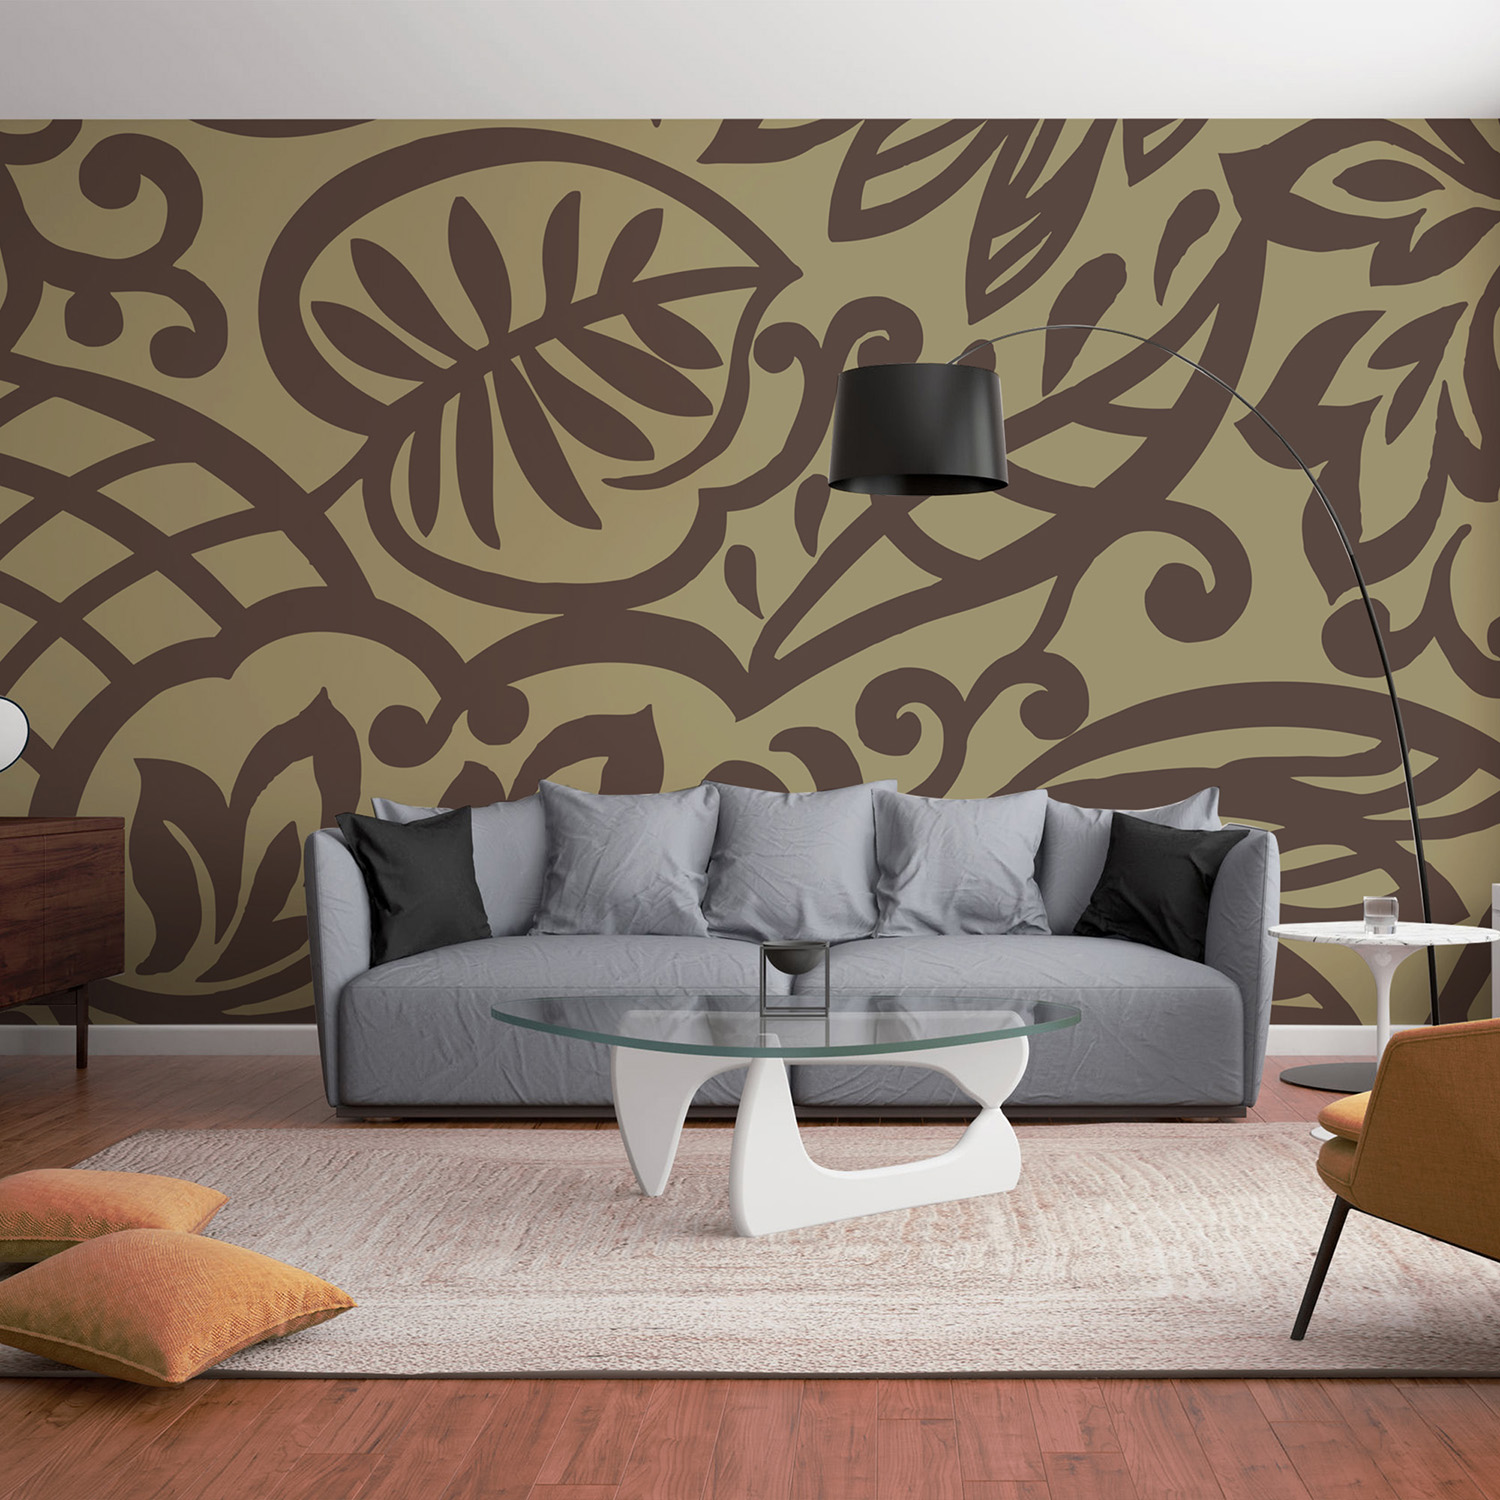 Mur d'image géométrique feuilles marrons